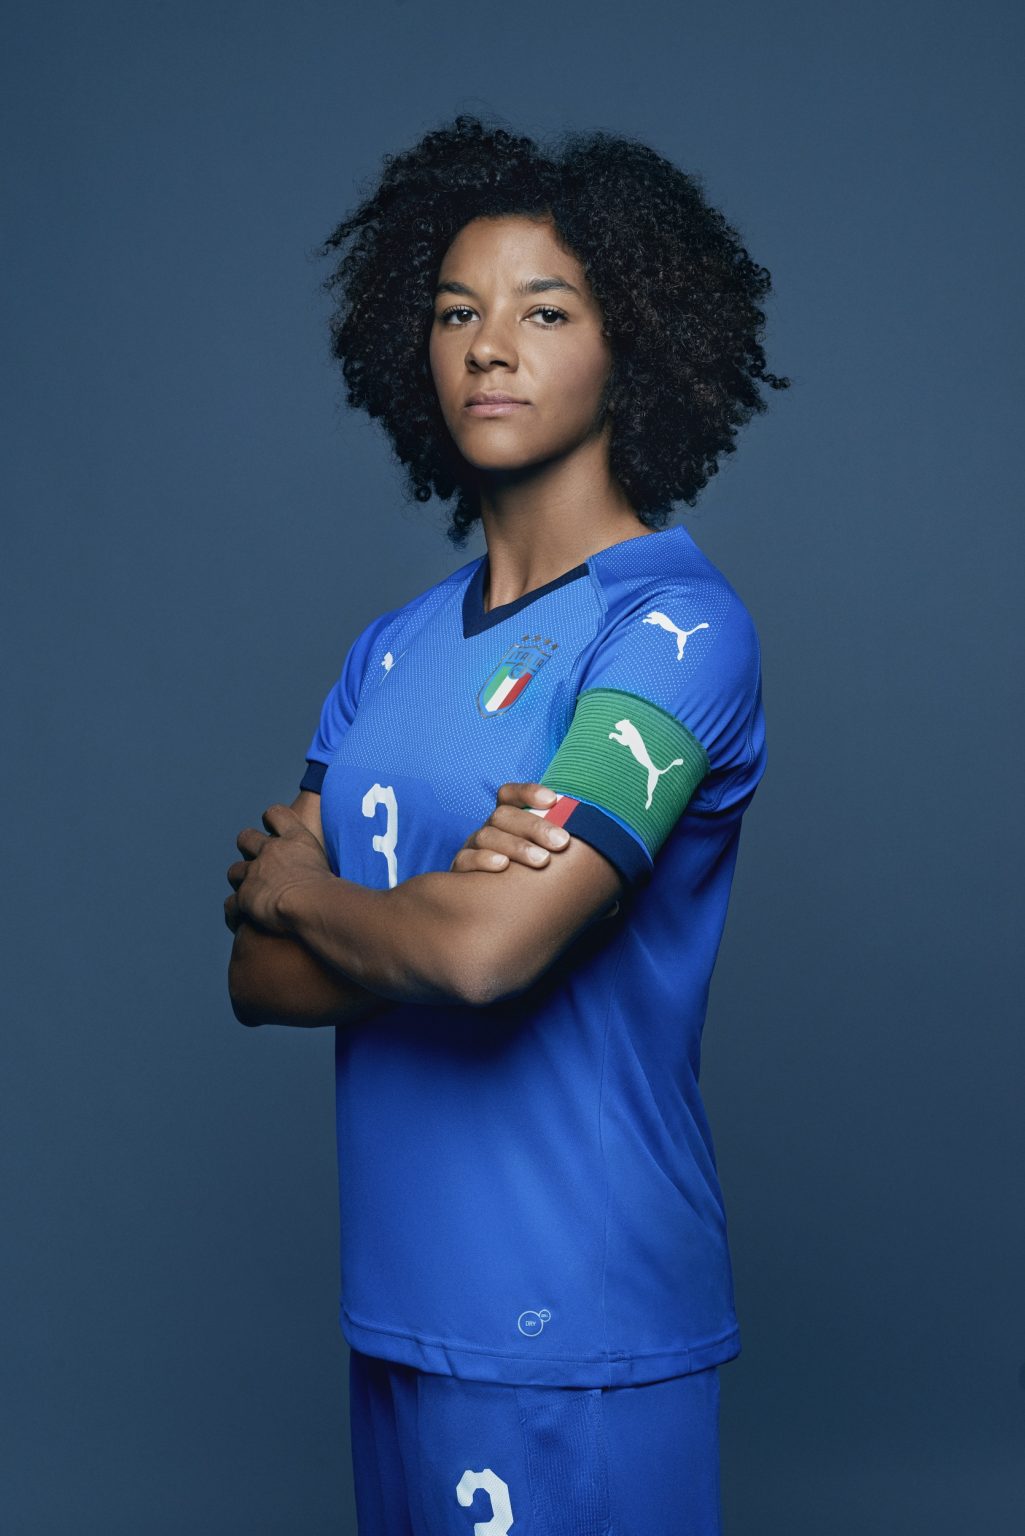 Florence, May 2019 - Sara Gama, Italy women's national football team player. ><
Firenze, maggio 2019 - Sara Gama, calciatrice della Nazionale femminile italiana di calcio.